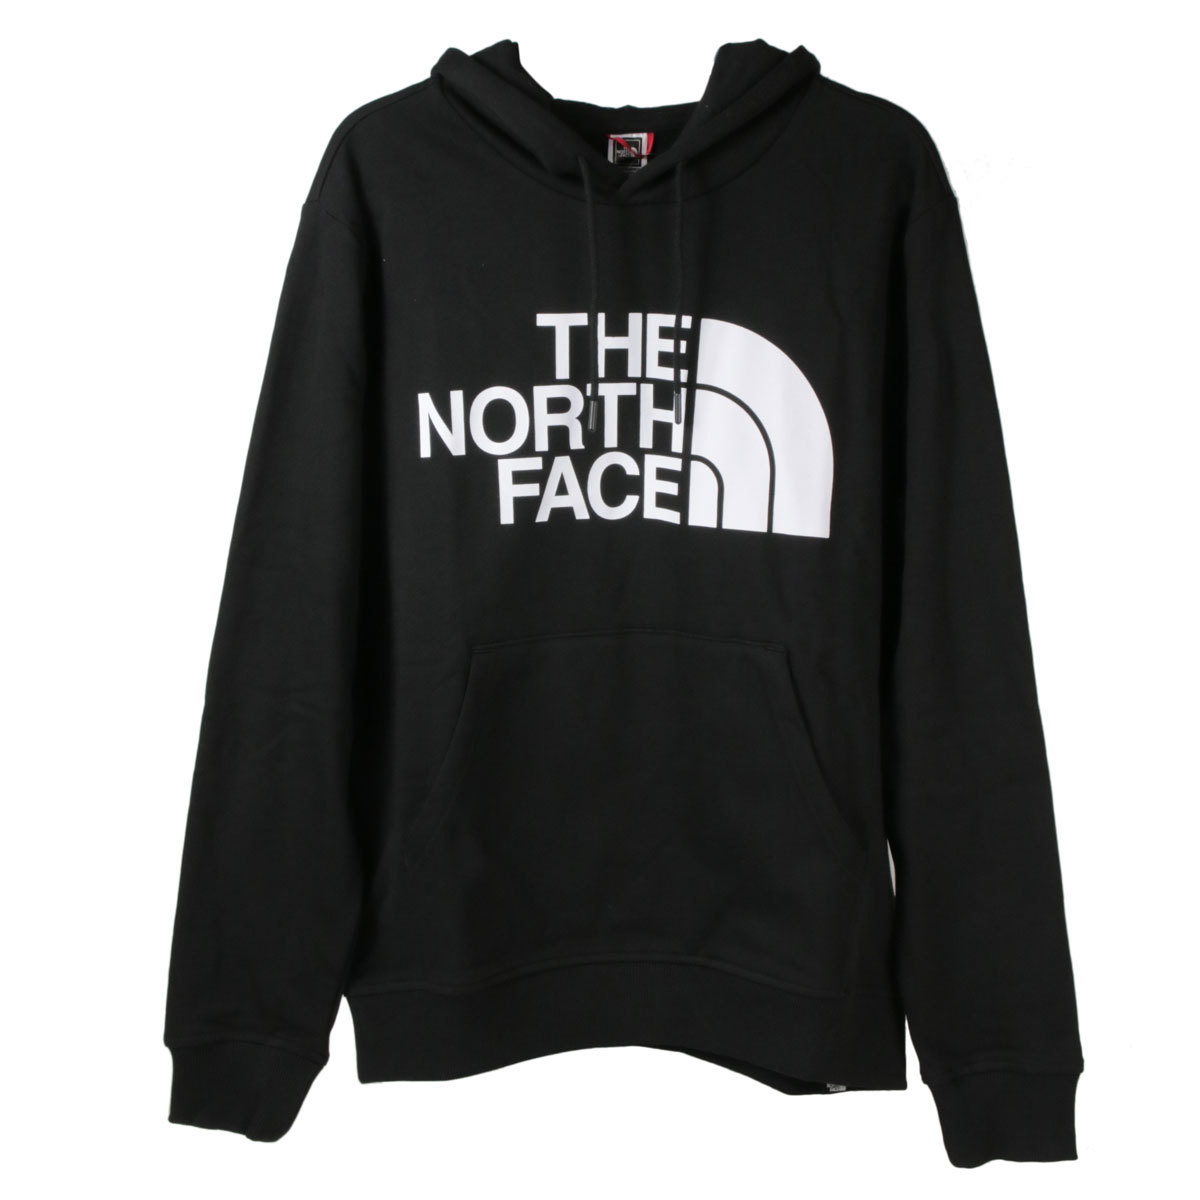 THE NORTH FACE ノースフェイス パーカー サイズ:M US企画 ブランド